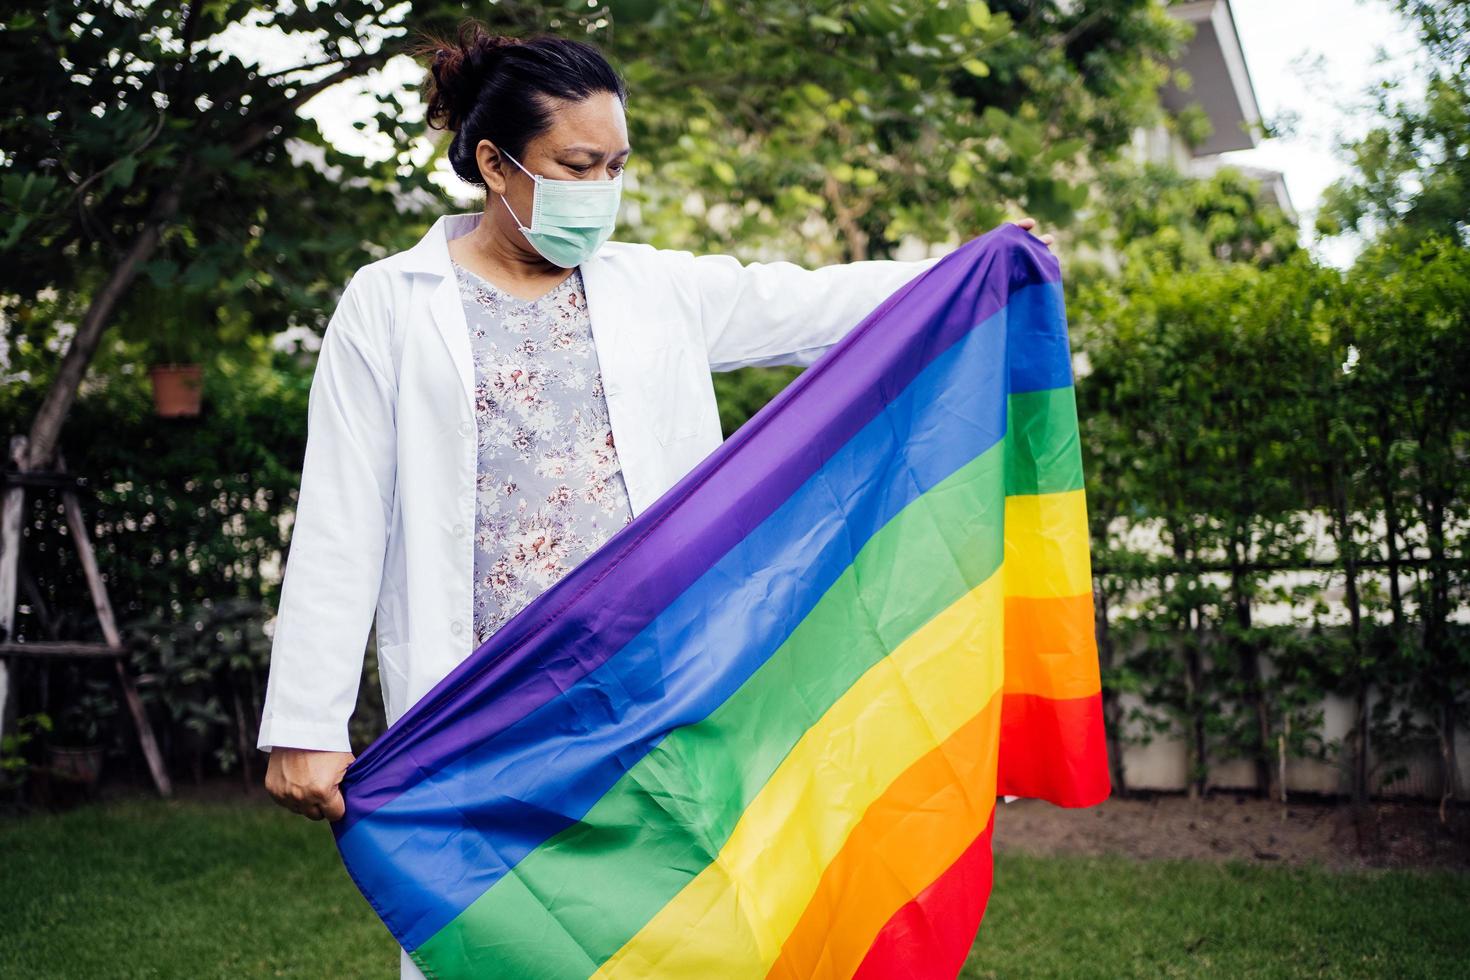 dame asiatique tenant un drapeau de couleur arc-en-ciel, symbole du mois de la fierté lgbt célèbre chaque année en juin social des droits des gays, lesbiennes, bisexuels, transgenres et humains. photo